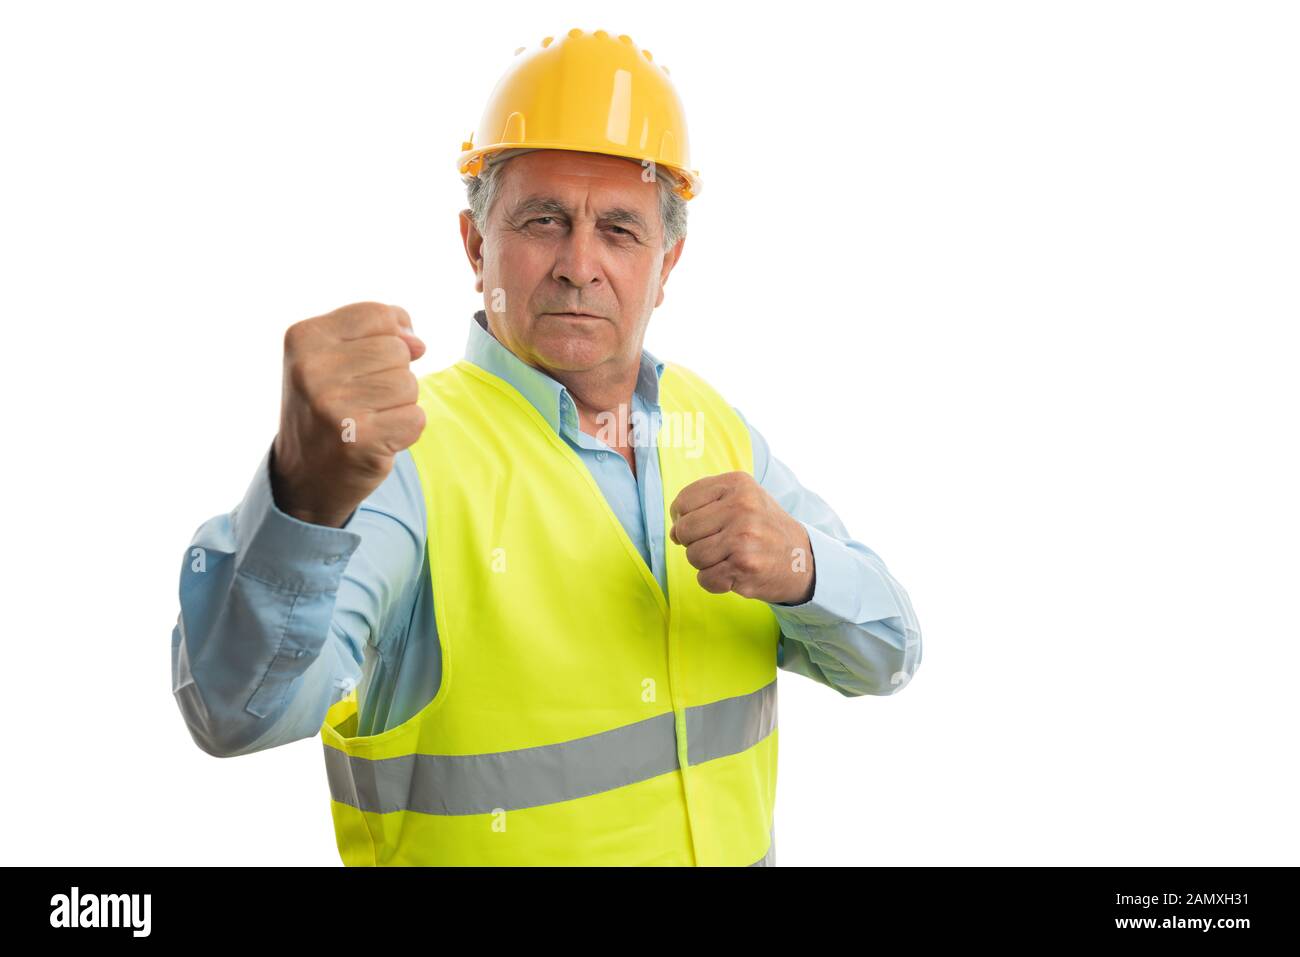 Alten männlichen Builder mit verärgerten Ausdruck zeigen Fäuste als aggressiv Konzept auf weißem Hintergrund Stockfoto